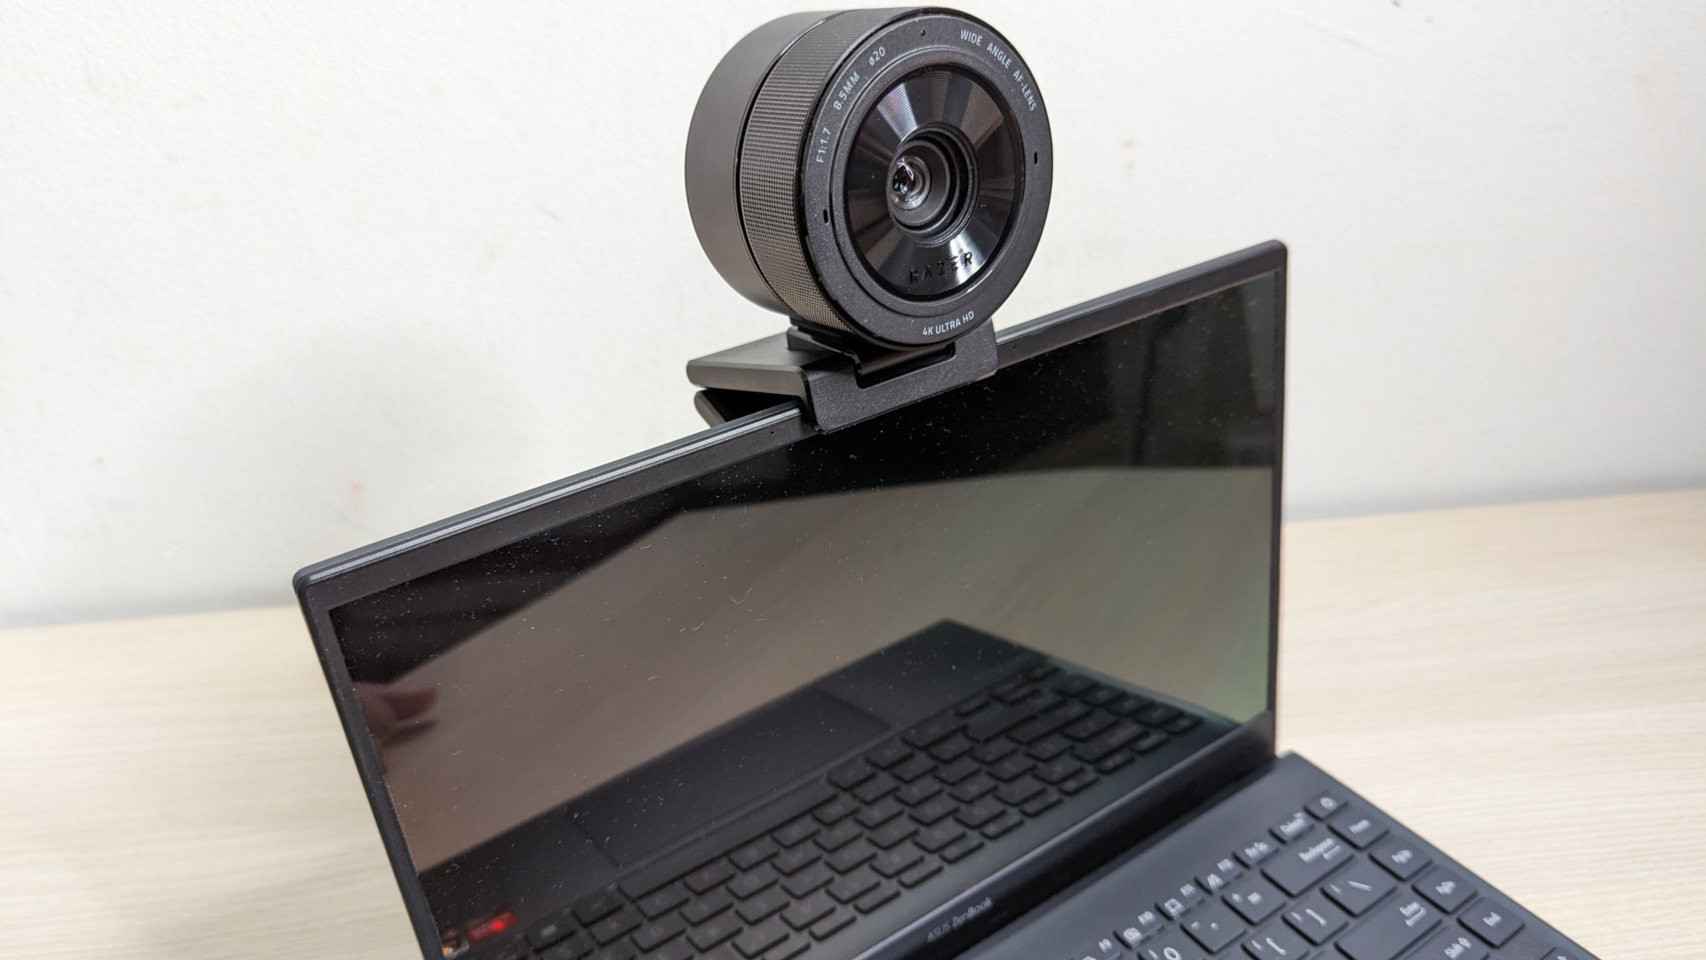 Buena suerte encontrando el equilibrio para usar esta gigantesca webcam de Razer